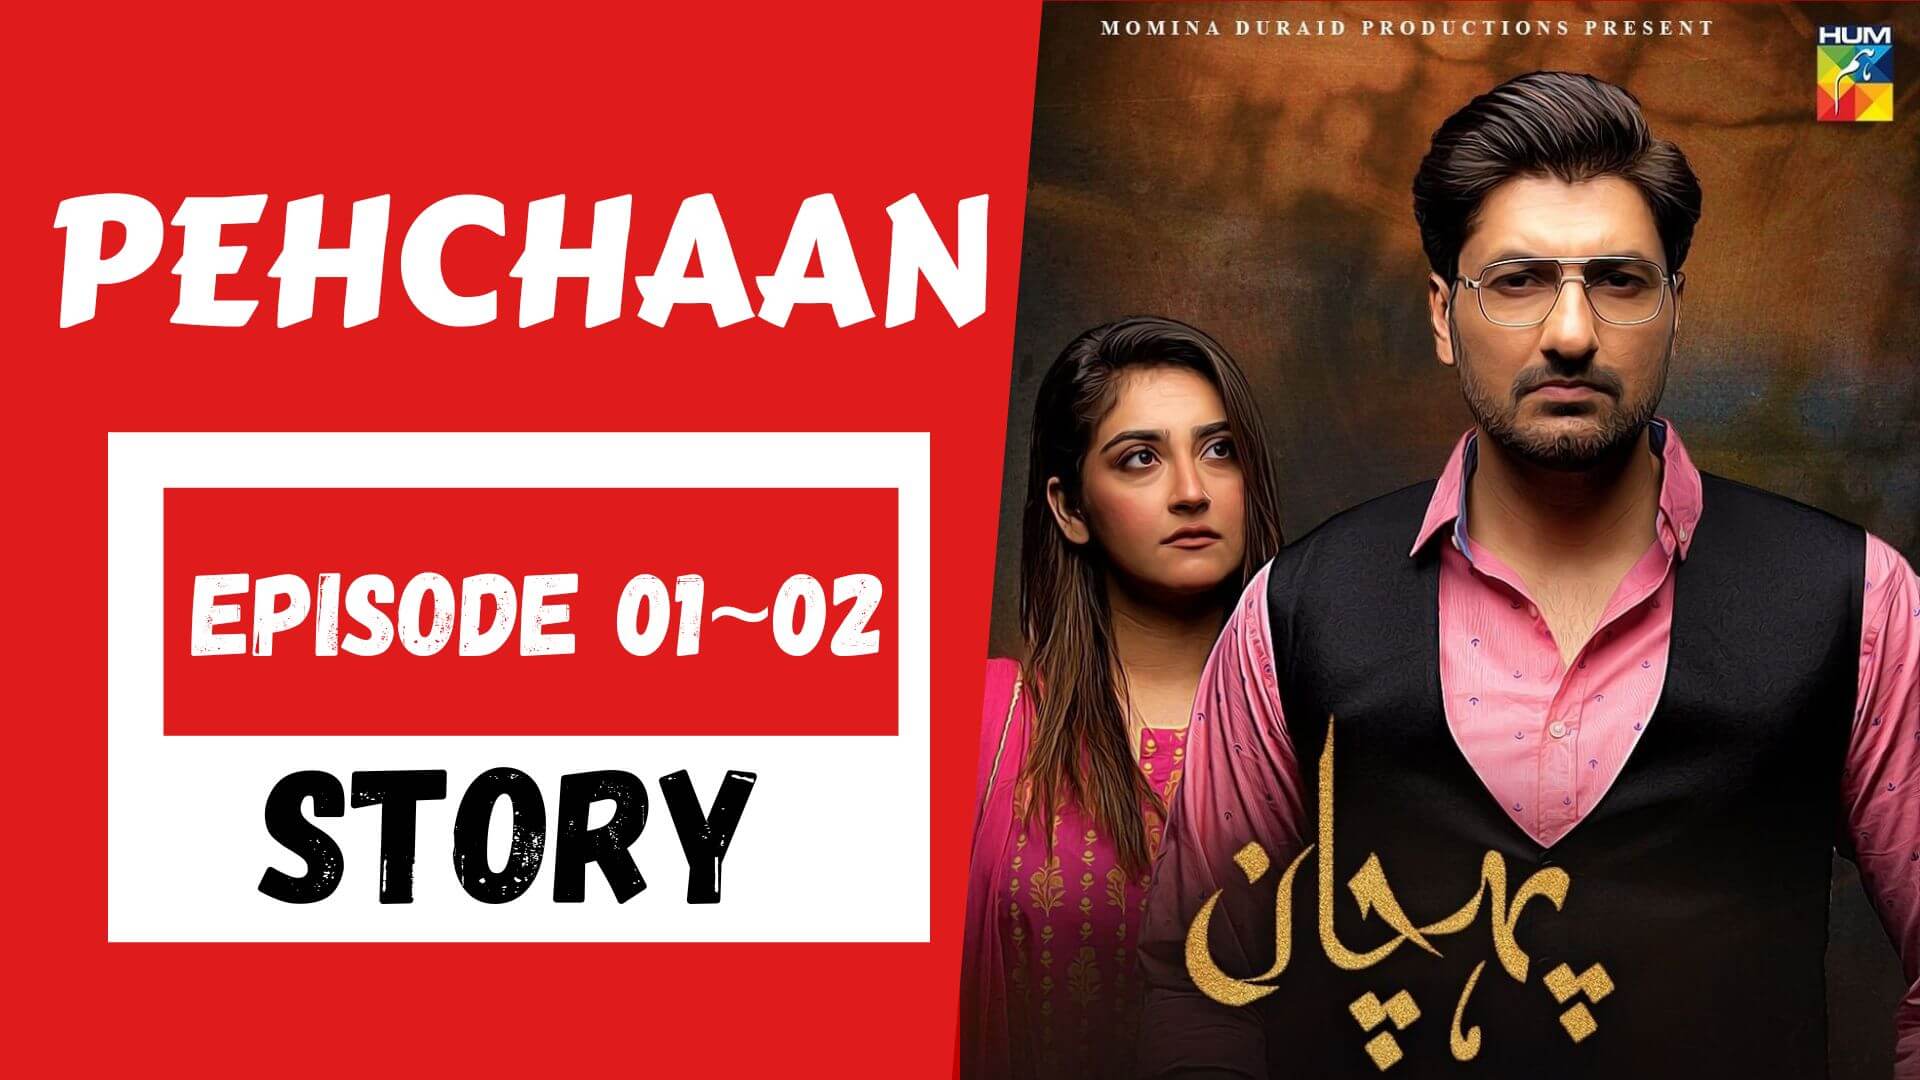 Pehchaan Episode 01_02 Story